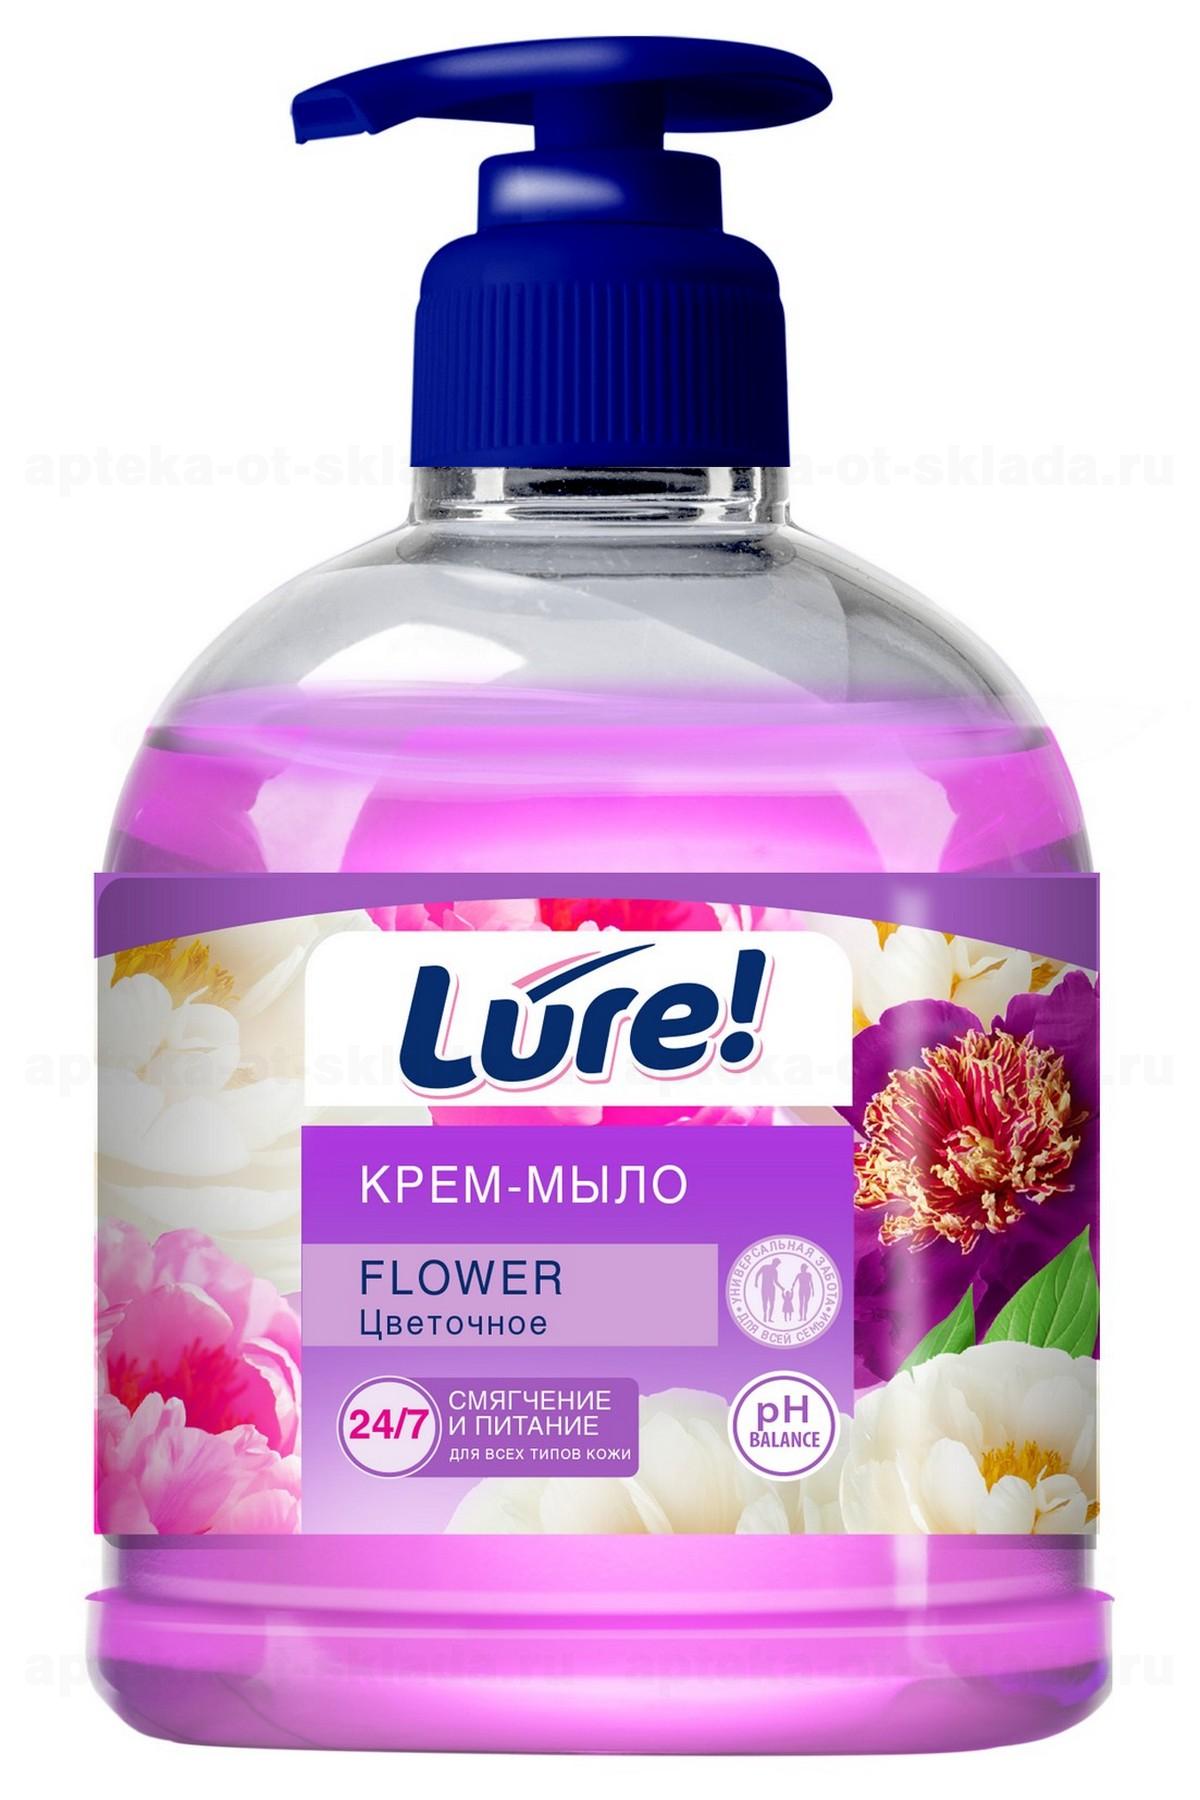 Lure крем-мыло с дозатором 500мл цветочное